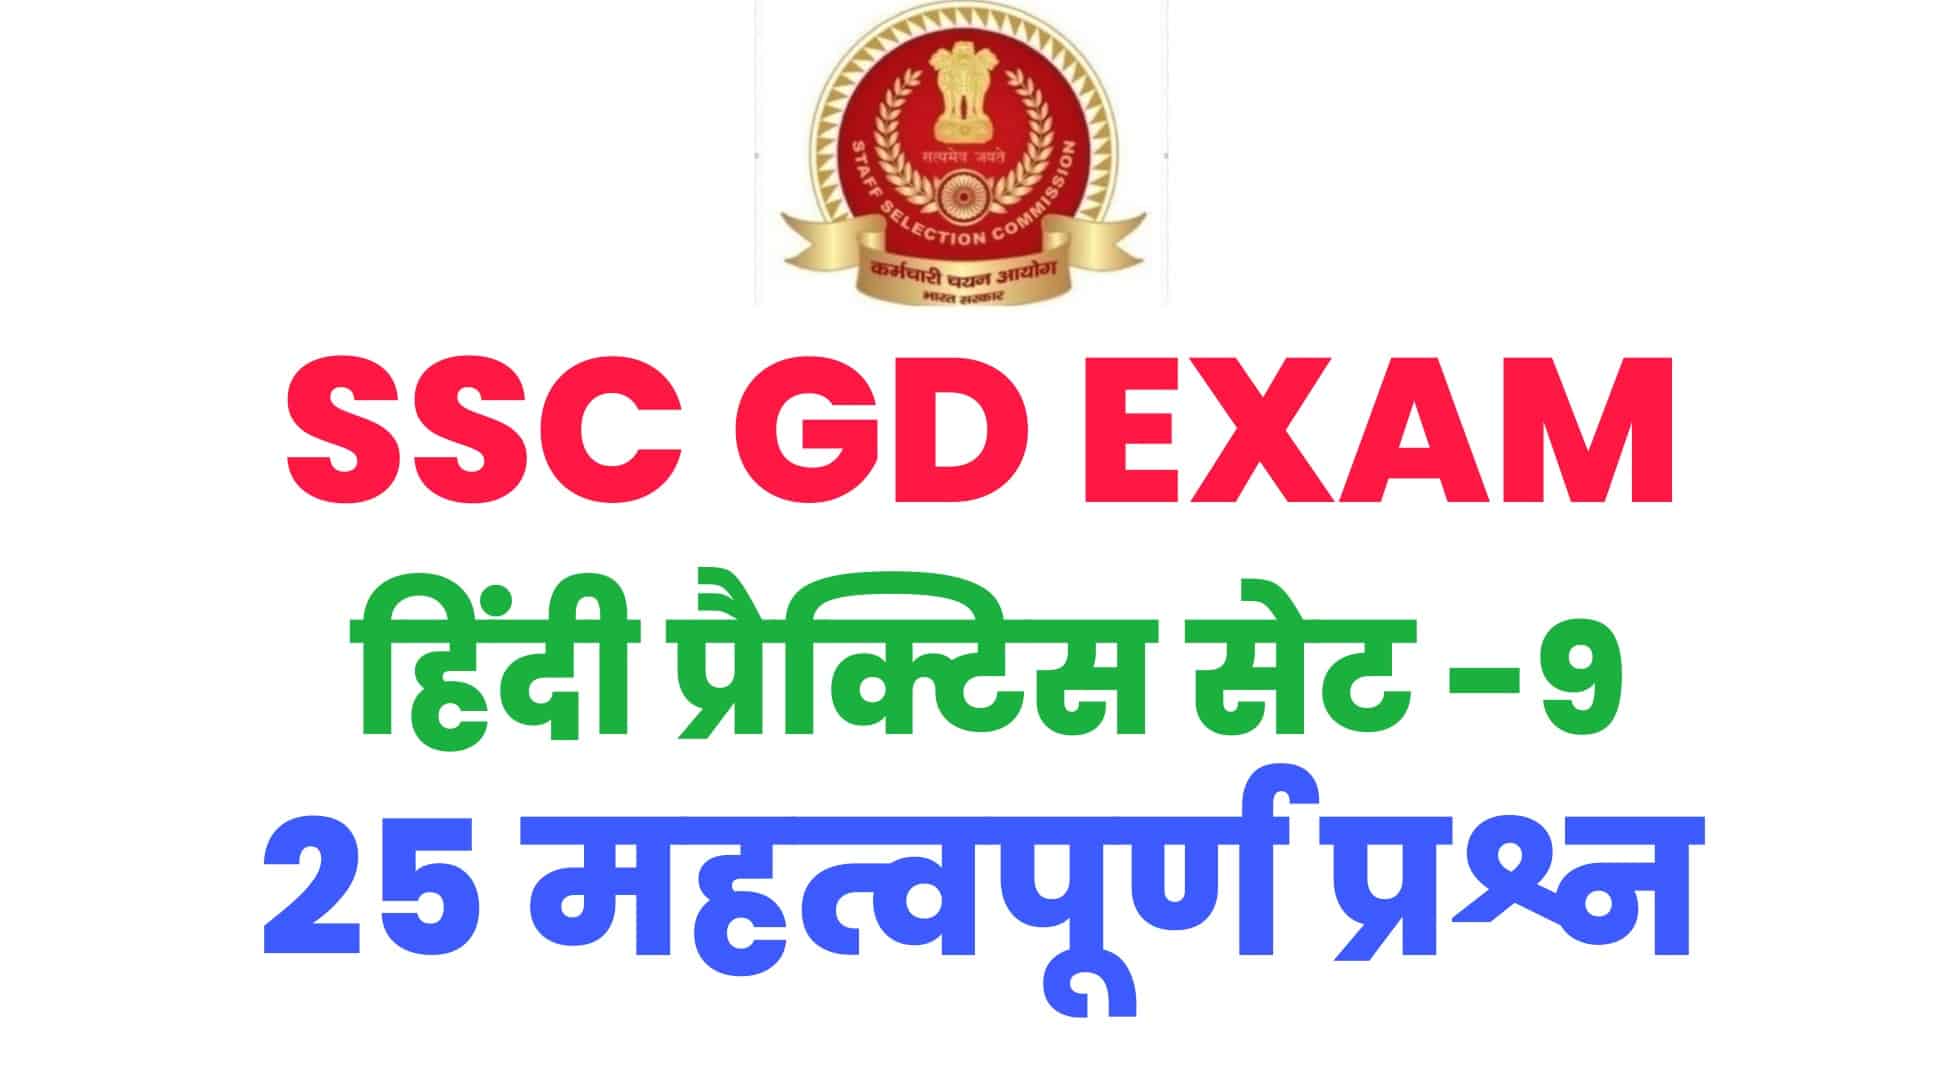 SSC GD हिंदी प्रैक्टिस सेट -9 : परीक्षा में पूछे जा चुके हैं ये 25 प्रश्न, अभ्यर्थी जरूर करें अध्ययन